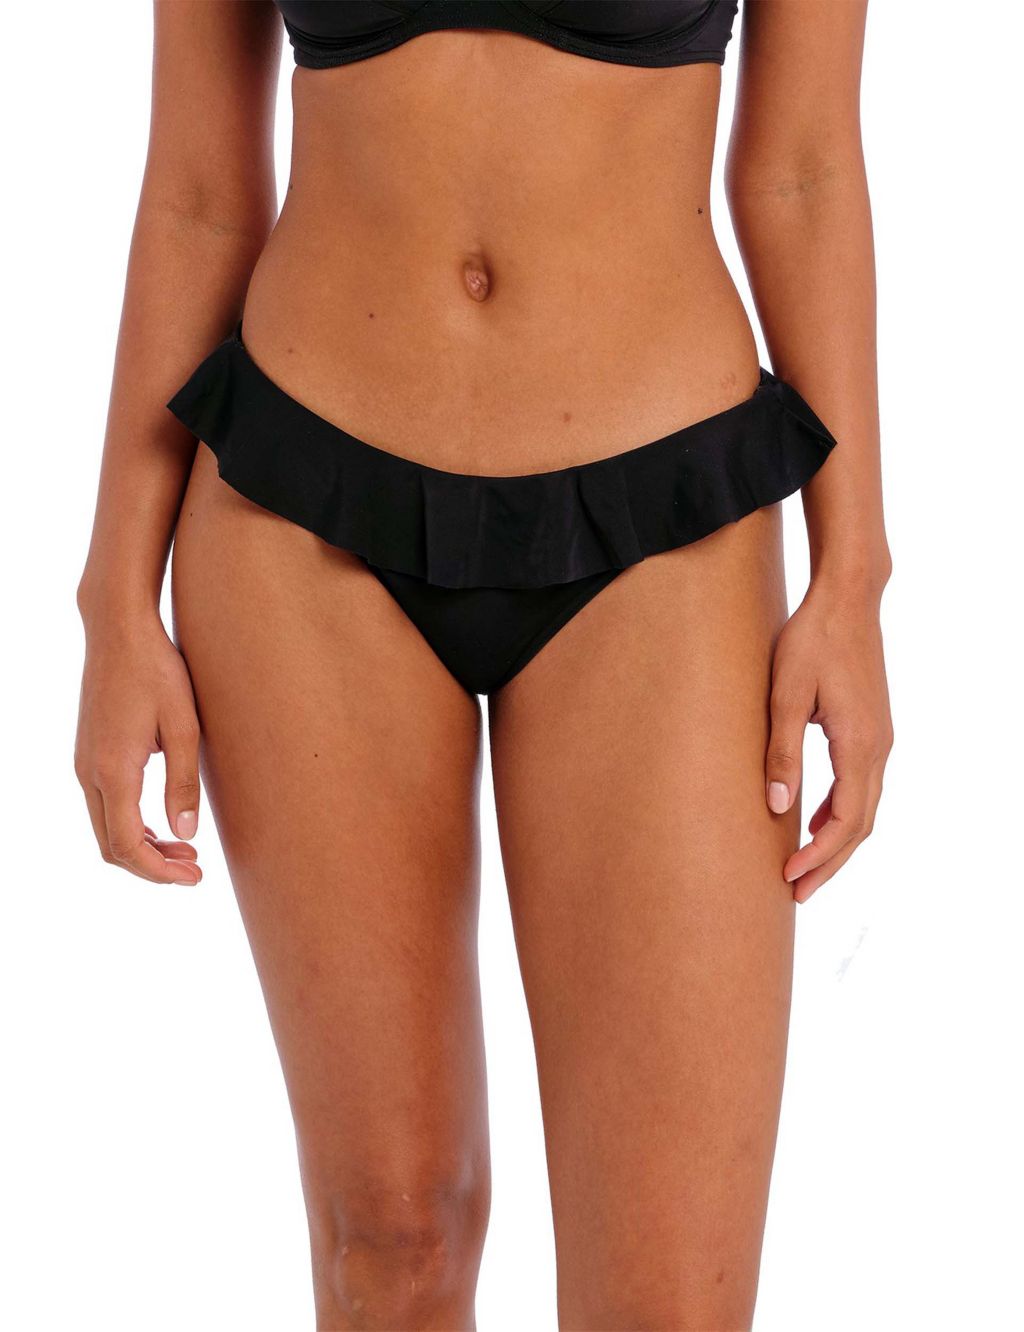 Women's Bikini Bottoms, High Waisted, Brazilian